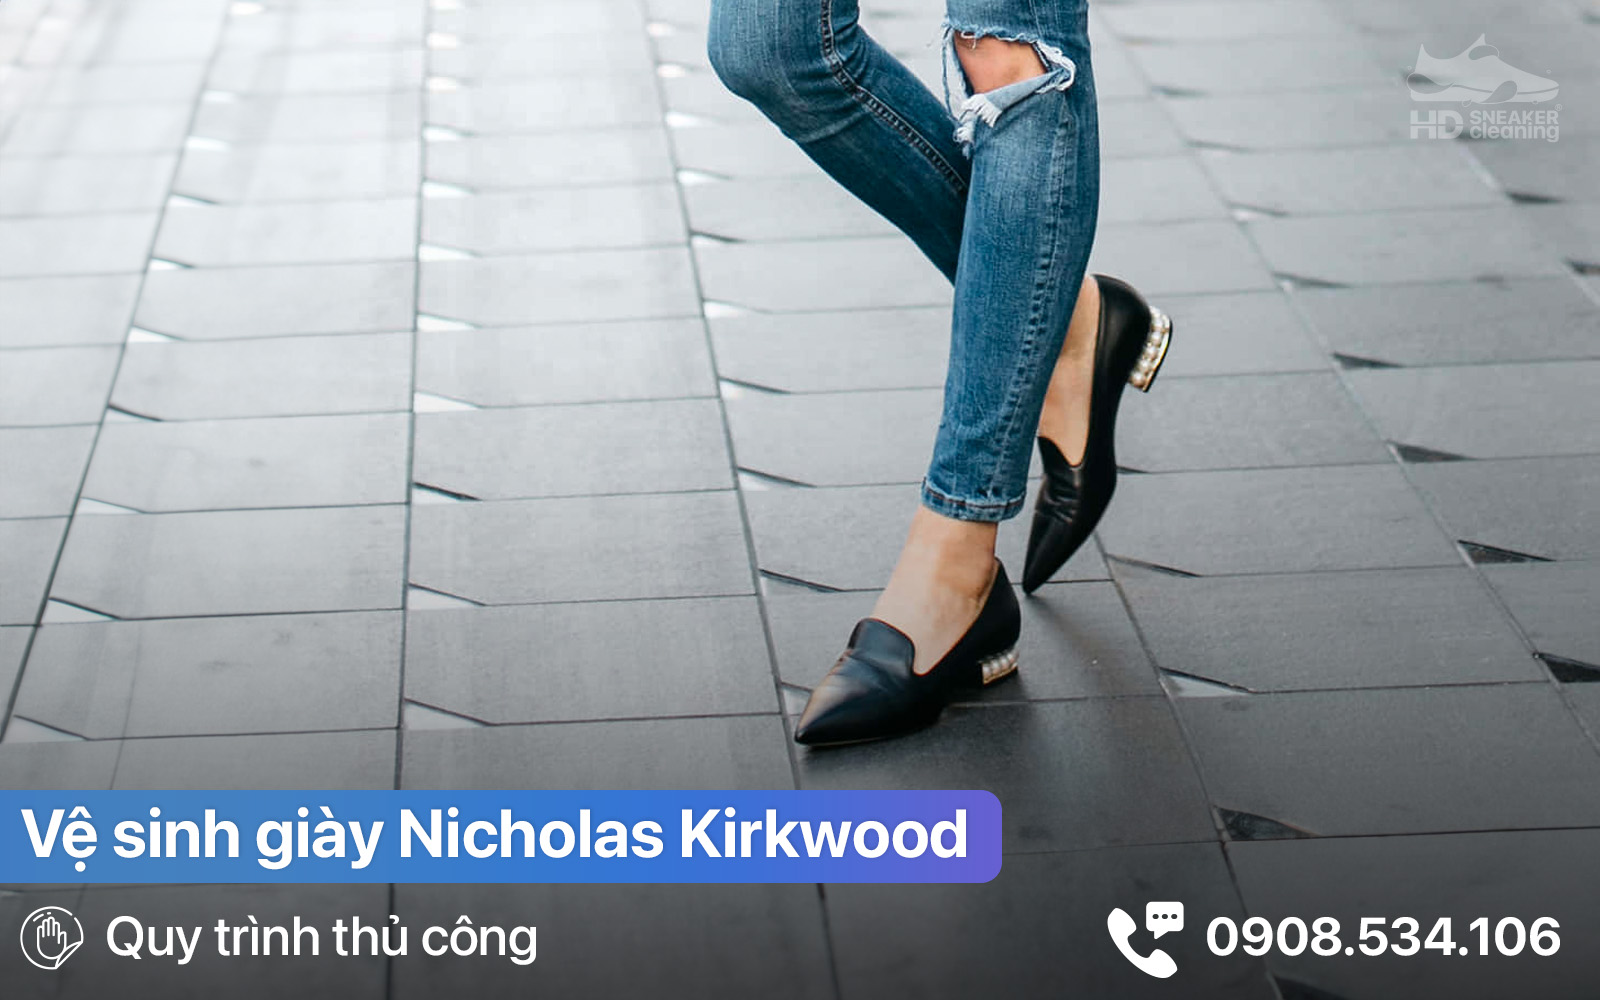 vệ sinh - giặt giày Nicholas Kirkwood